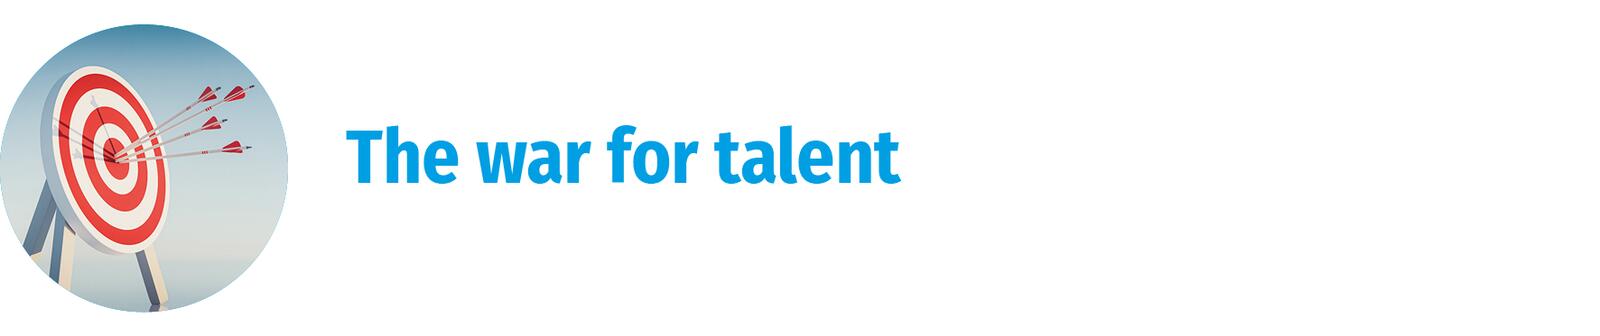 The war of talent w